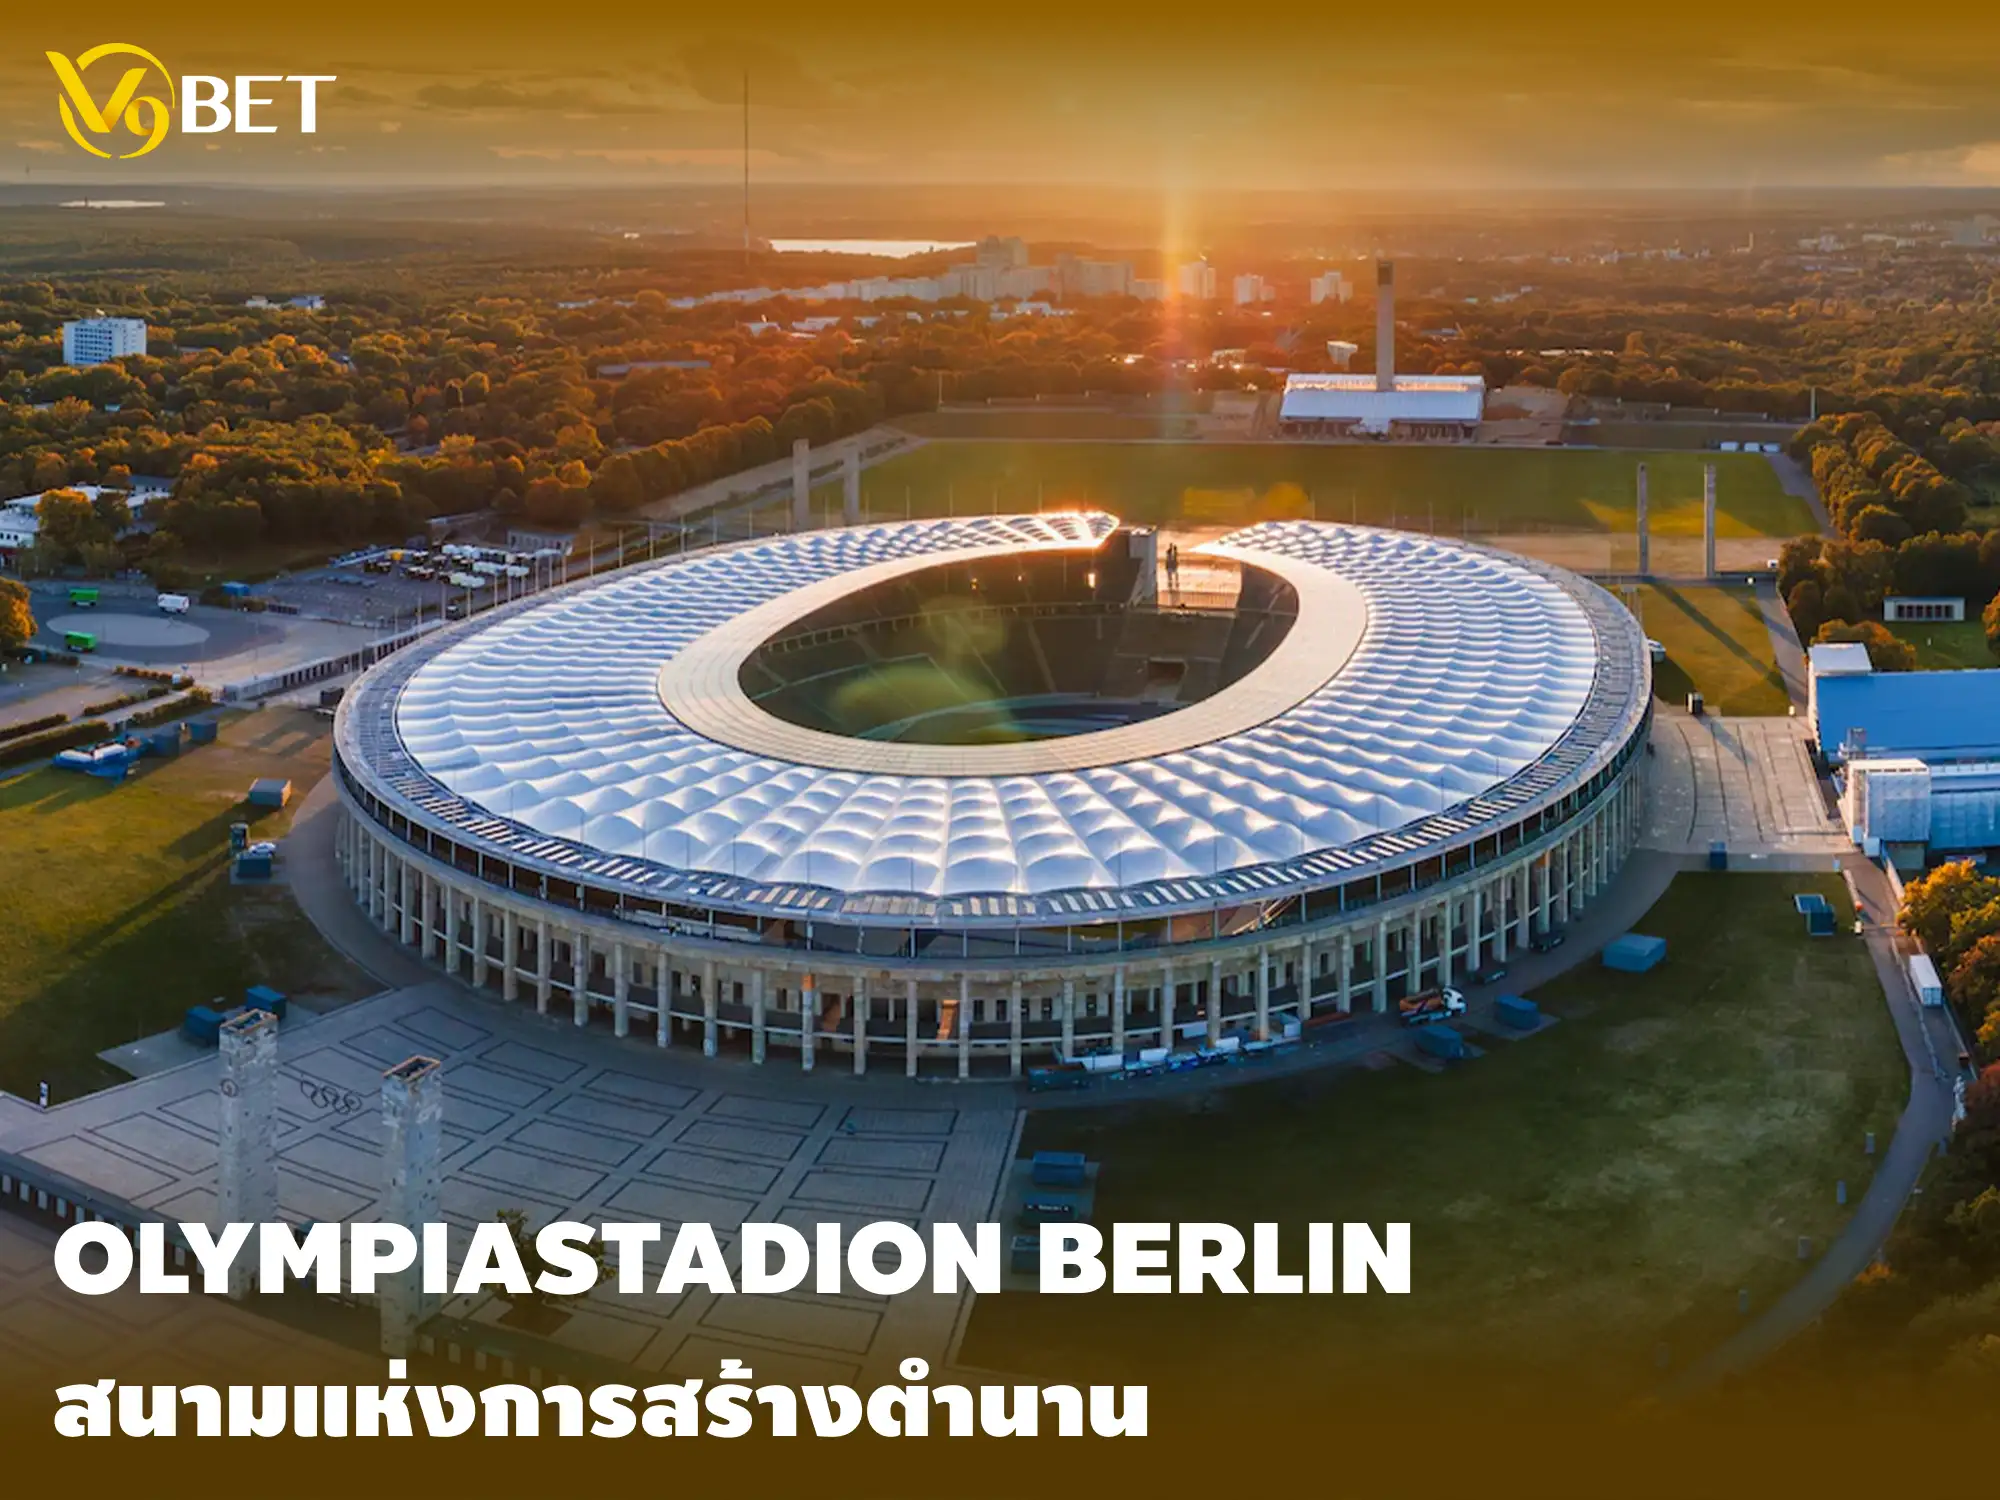 Olympiastadion เบอร์ลิน: ประวัติศาสตร์หน้าใหม่จะเกิดขึ้นที่นี่